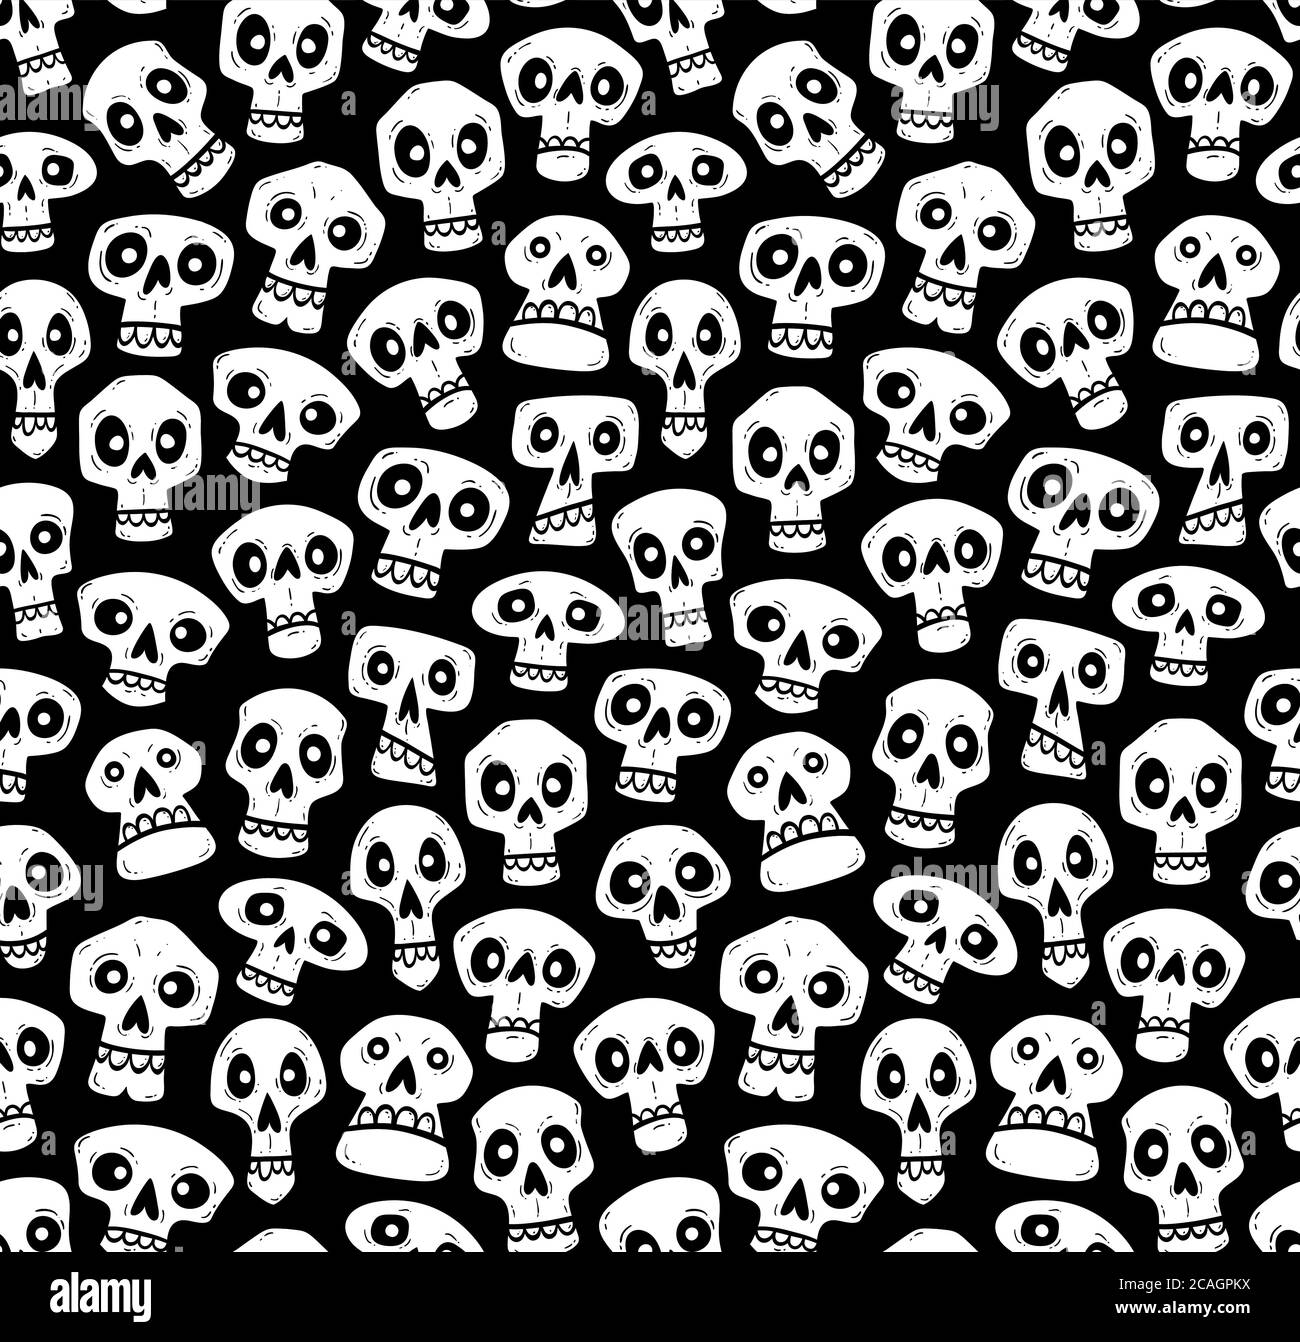 Totenköpfe Nahtloses Muster. Niedliche handgezeichnete halloween Schädel im Cartoon-Stil. Vektorgrafik, isoliert auf schwarzem Hintergrund. Stock Vektor